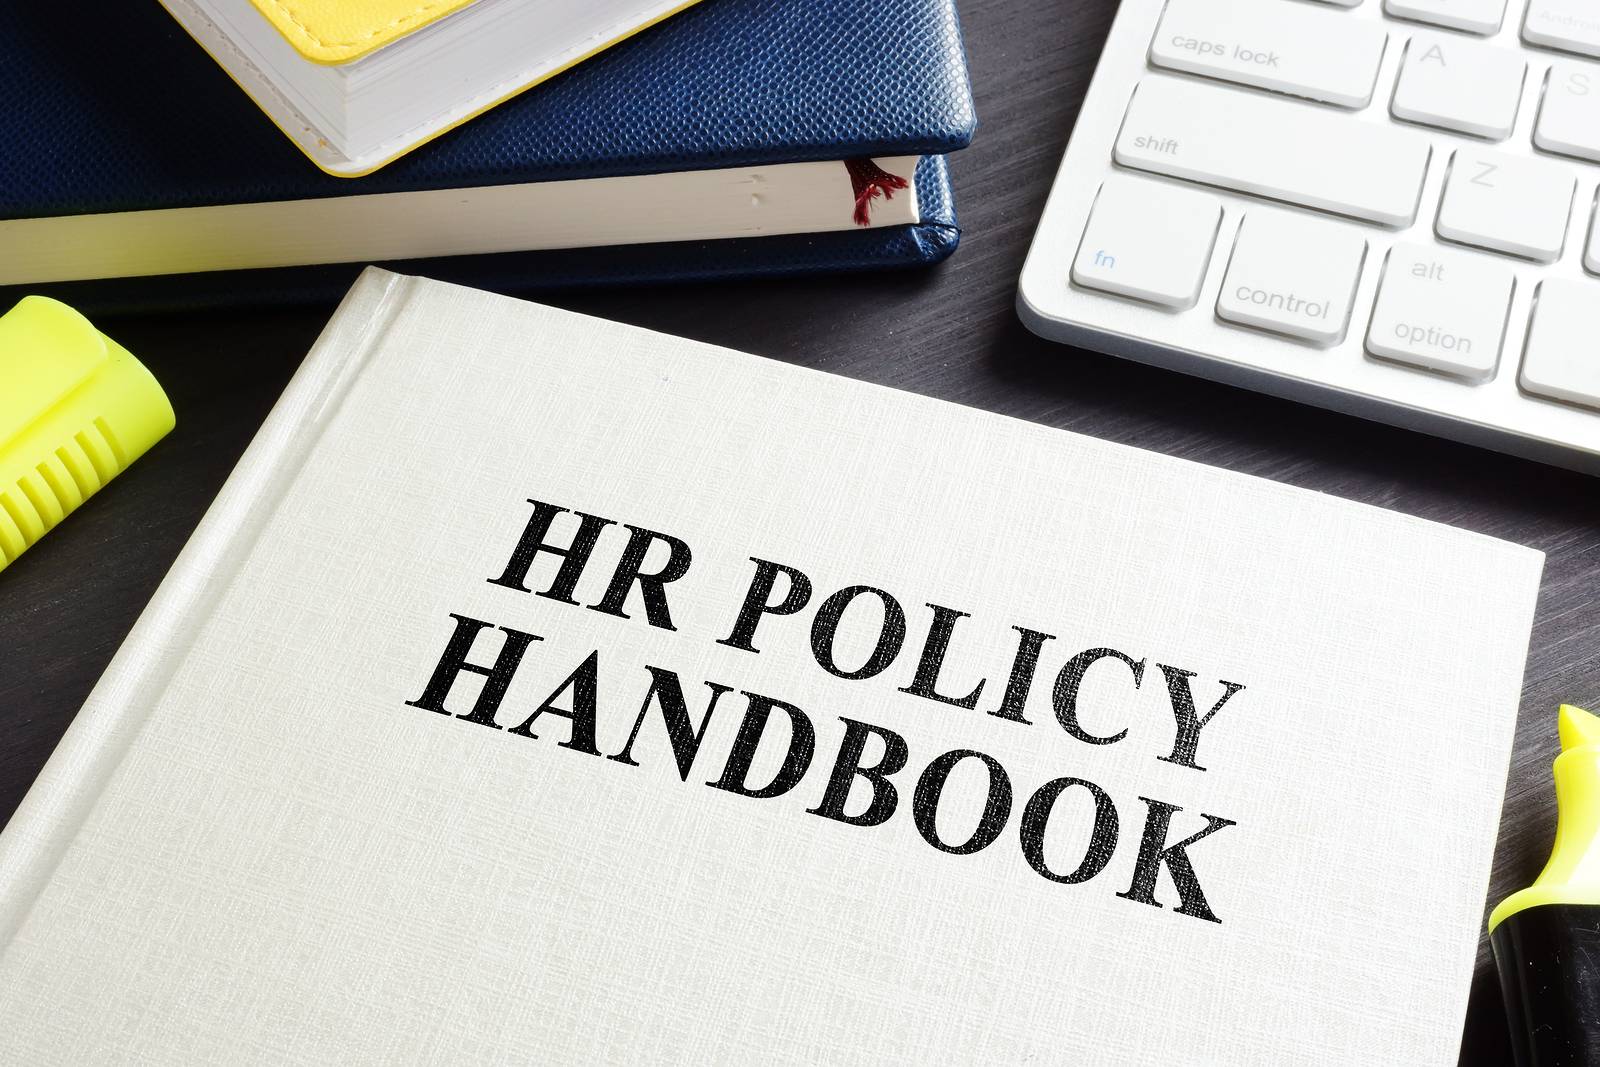 HR policy handbook on a desk